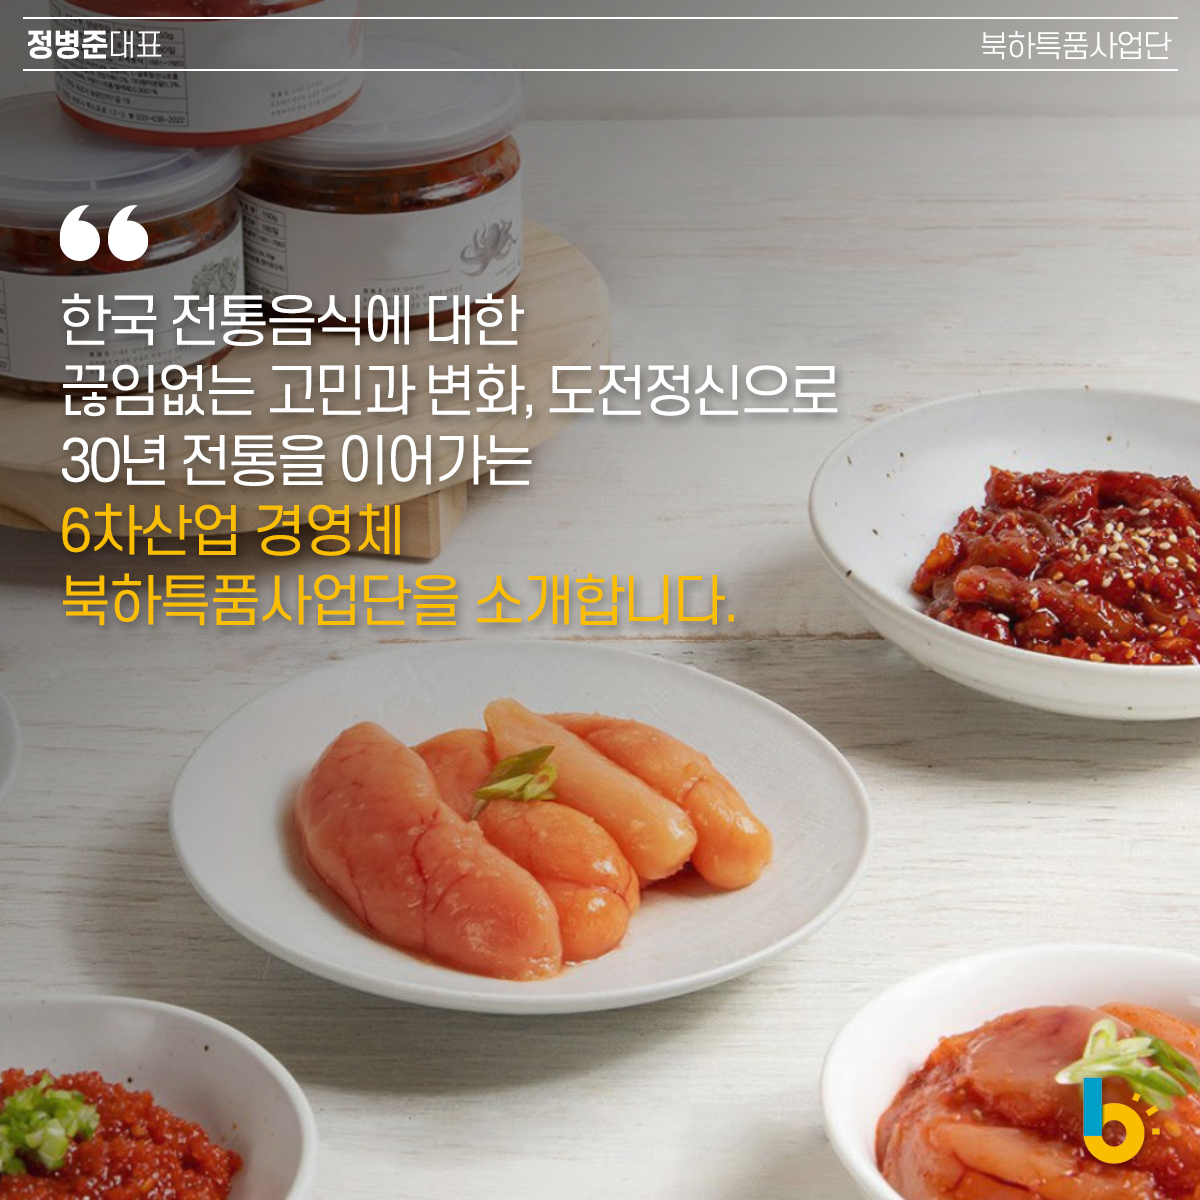 한국 전통음식에 대한 끊임없는 고민과 변화, 도전정신으로 30년 전통을 이어가는 6차산업 경영체 북하특품사업단을 소개합니다. 